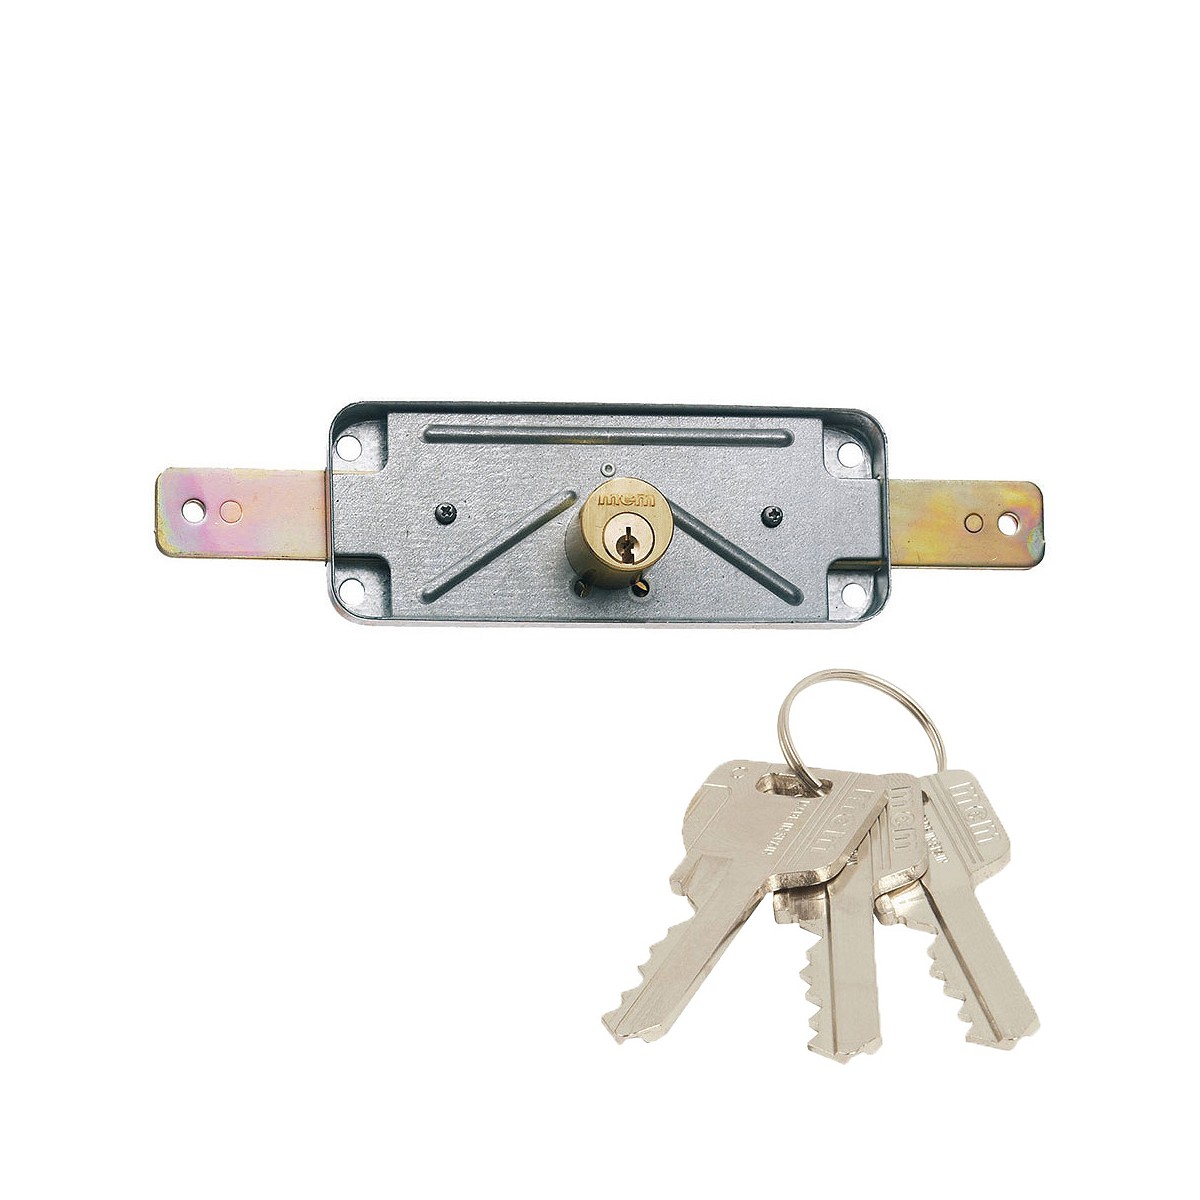 Cerradura de sobreponer para puertas metálicas de persiana o basculantes con cilindro de serreta de tres llaves. 1511v mcm